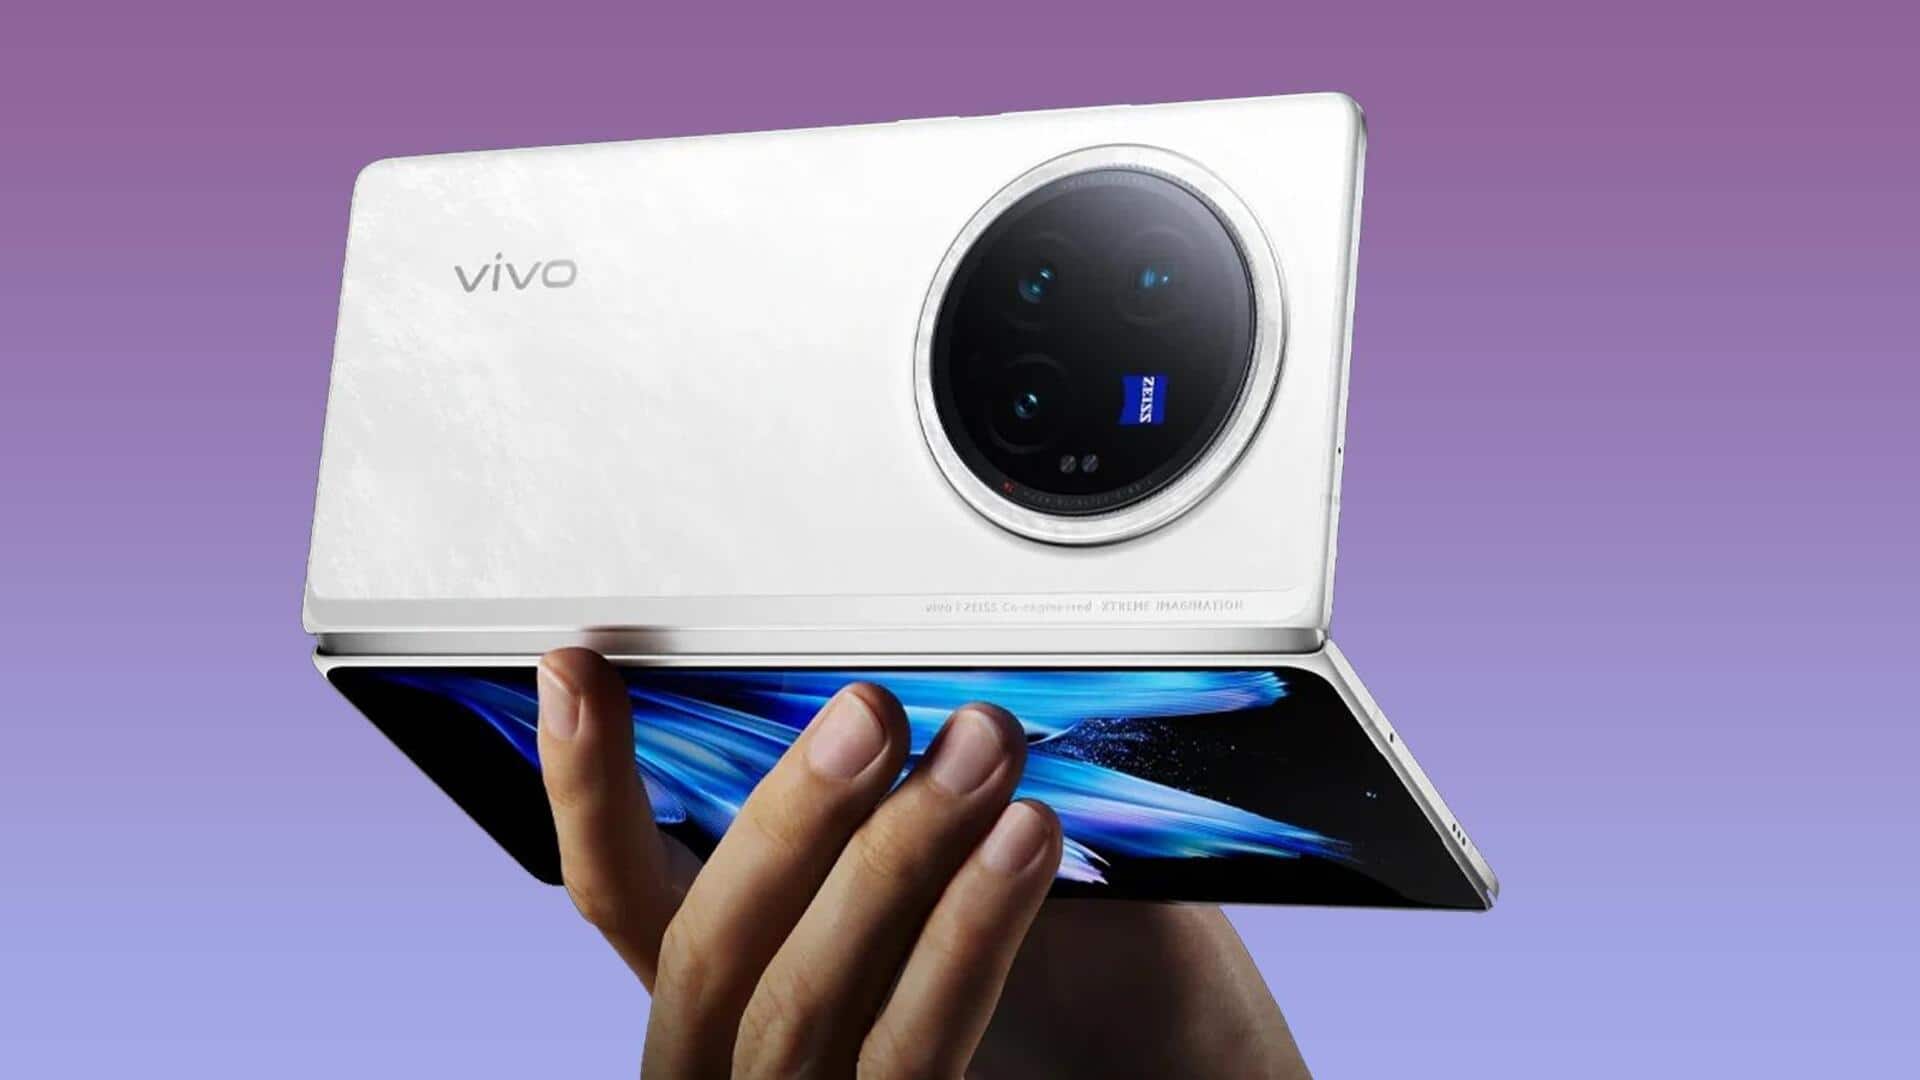 वीवो X फोल्ड 3 प्रो भारत में 6 जून को होगा लॉन्च, जानें संभावित फीचर्स